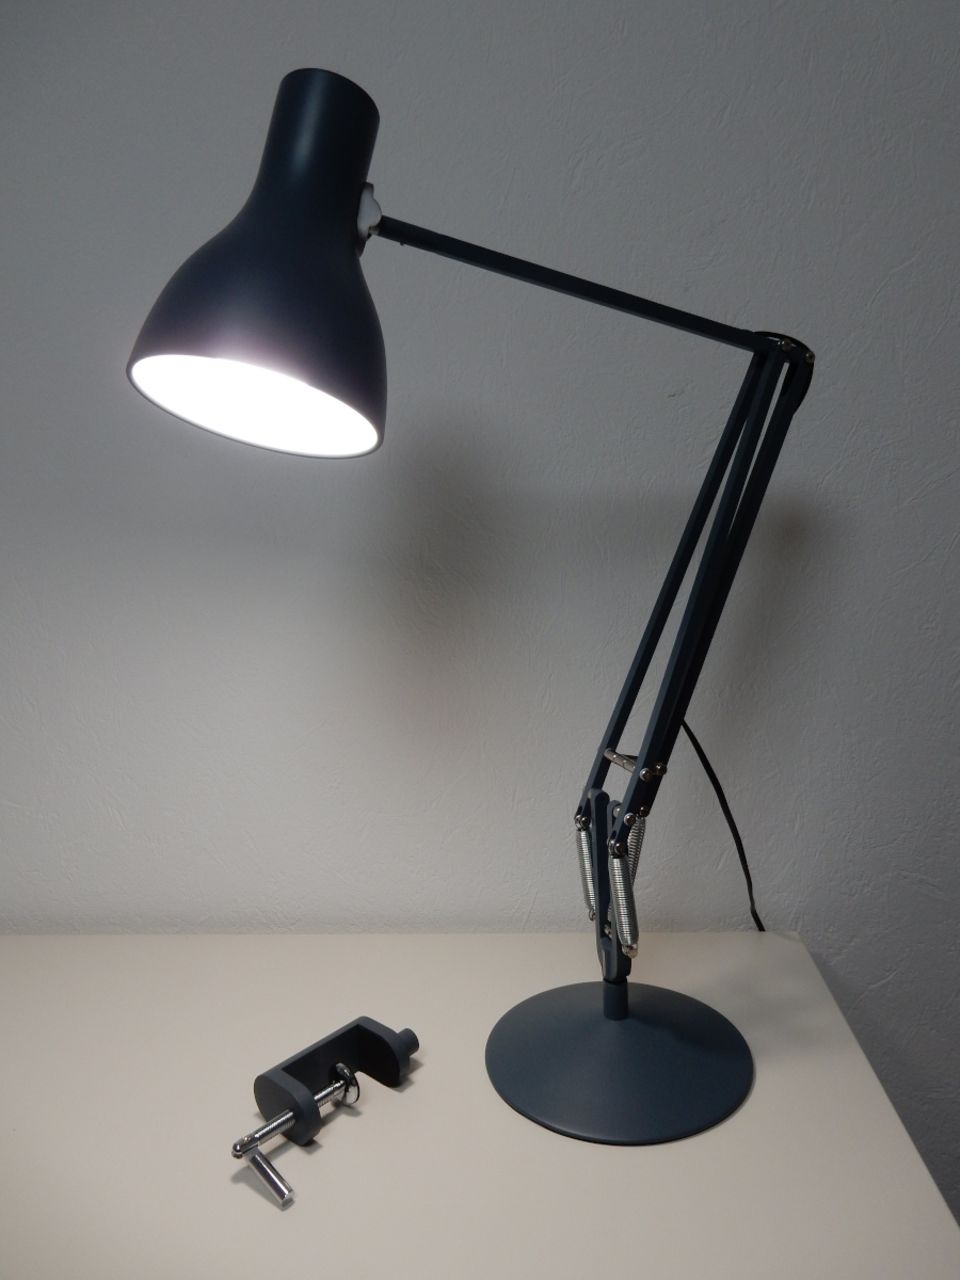 Die Tageslichtlampe "Tifez" von Natur-Nah kommt mit einem Vollspektrum-LED-Leuchtmittel, das die Qualitäten des Sonnenlichts ins Homeoffice holt